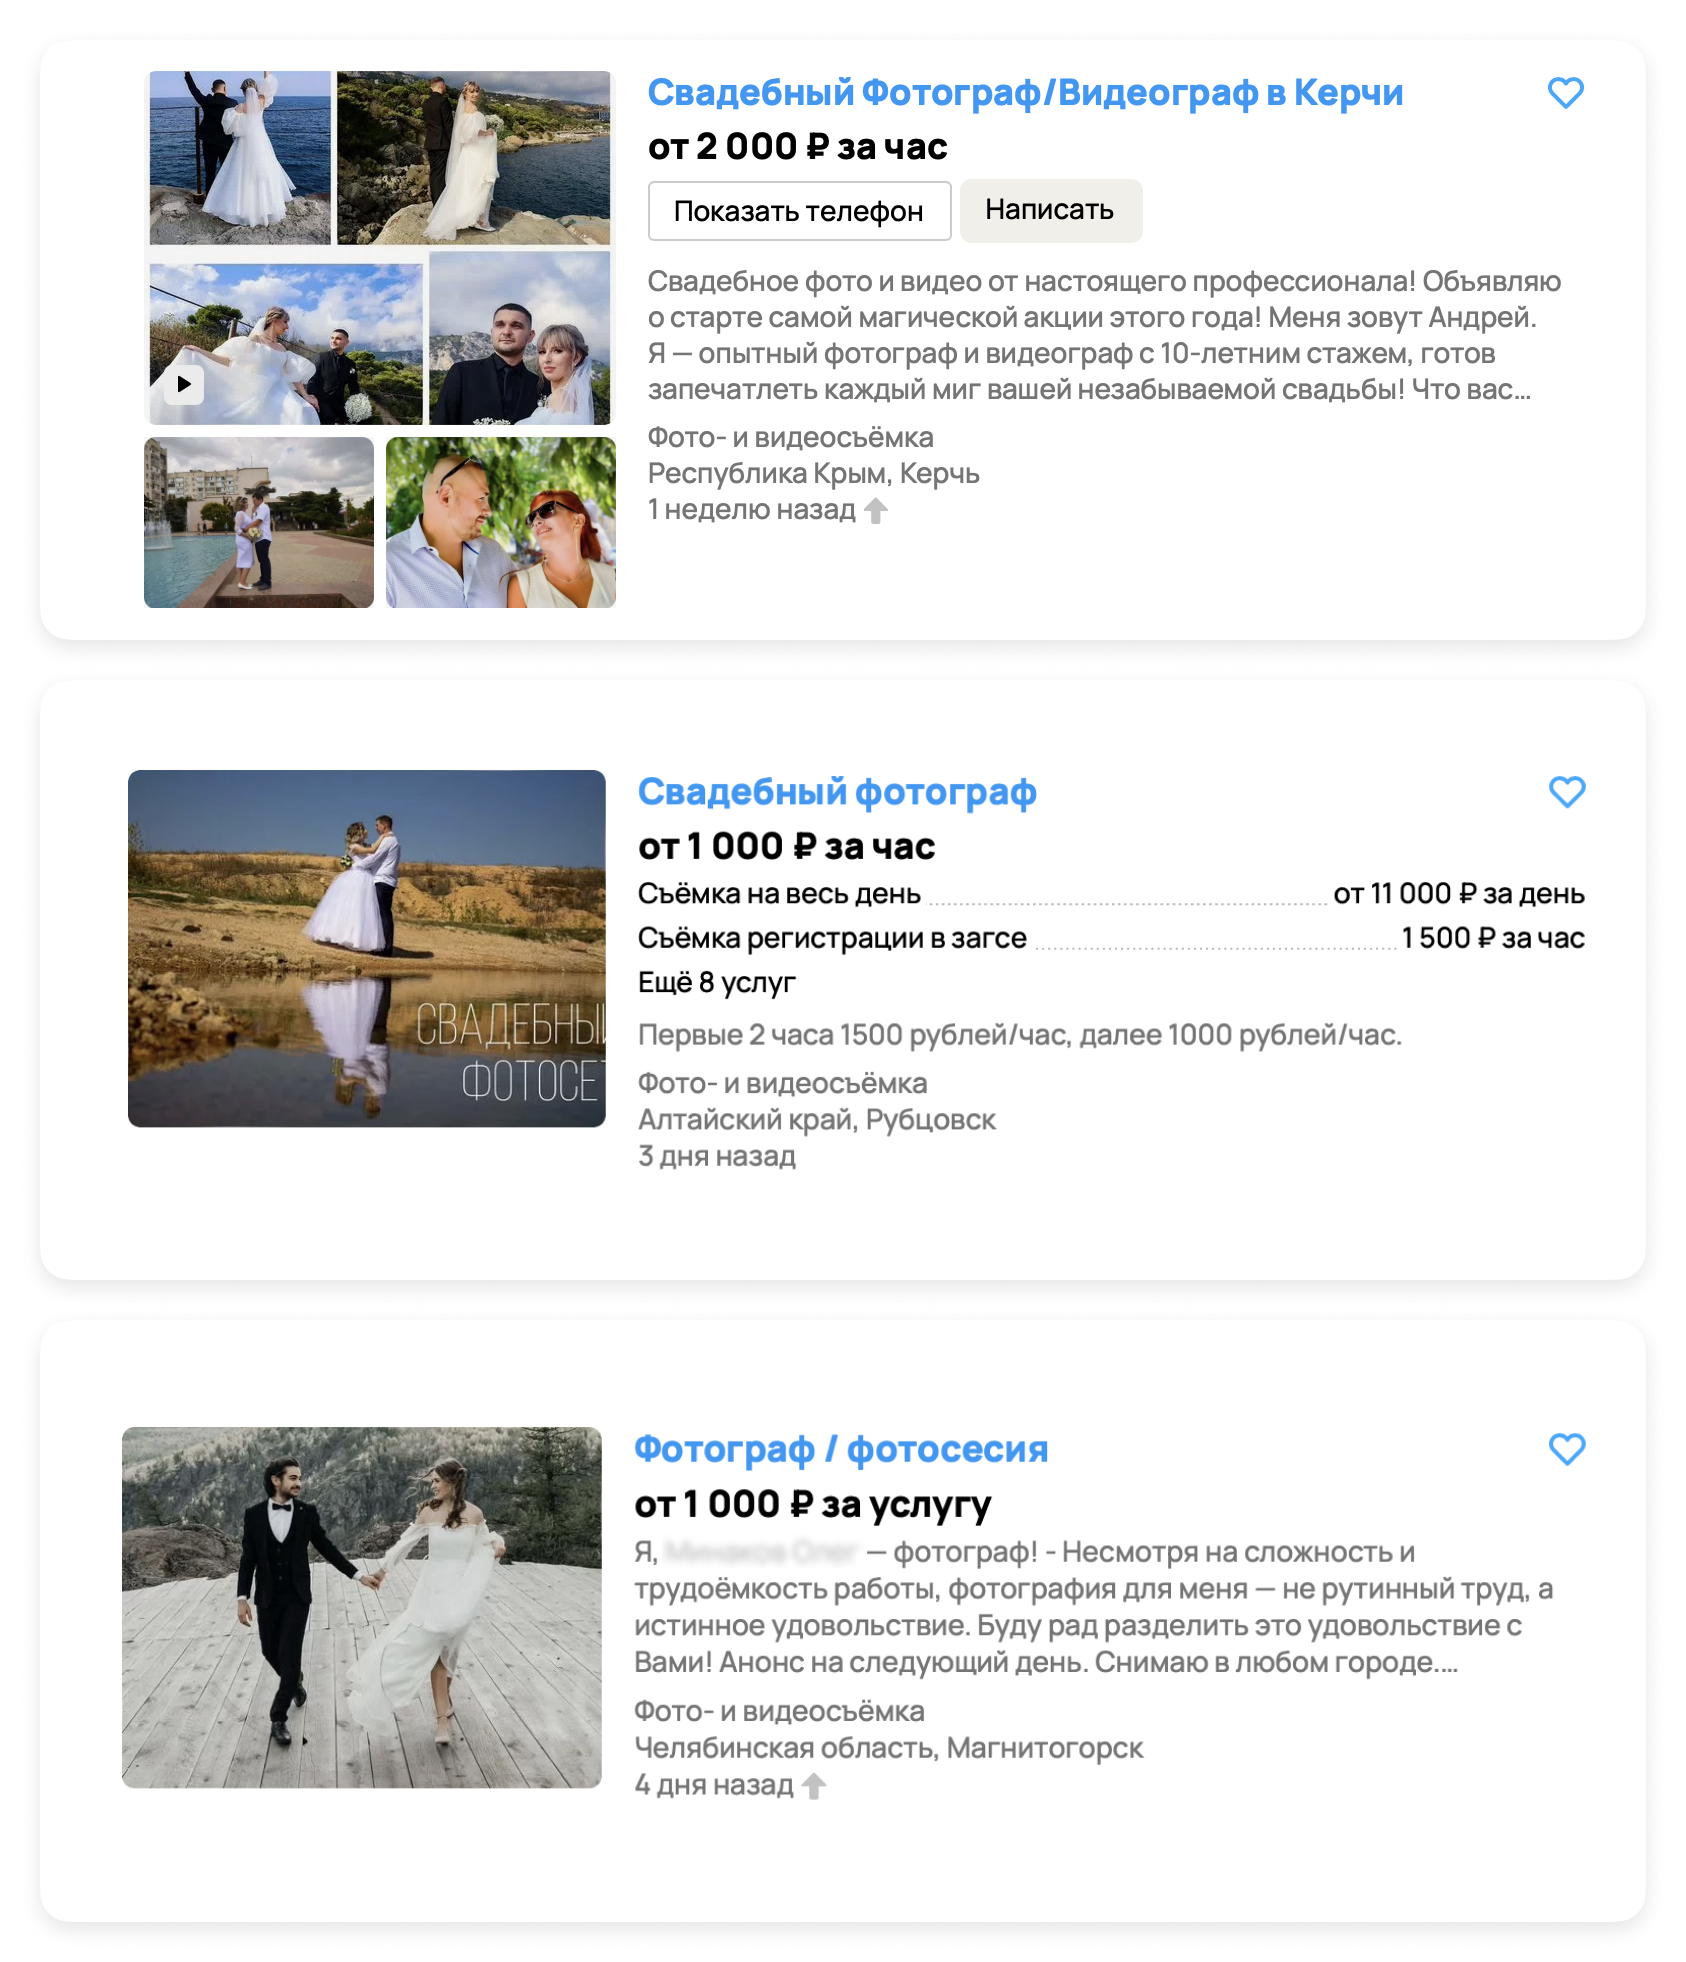 Скриншоты трех объявлений с услугами фотографов с разными ошибками в первом абзаце описания